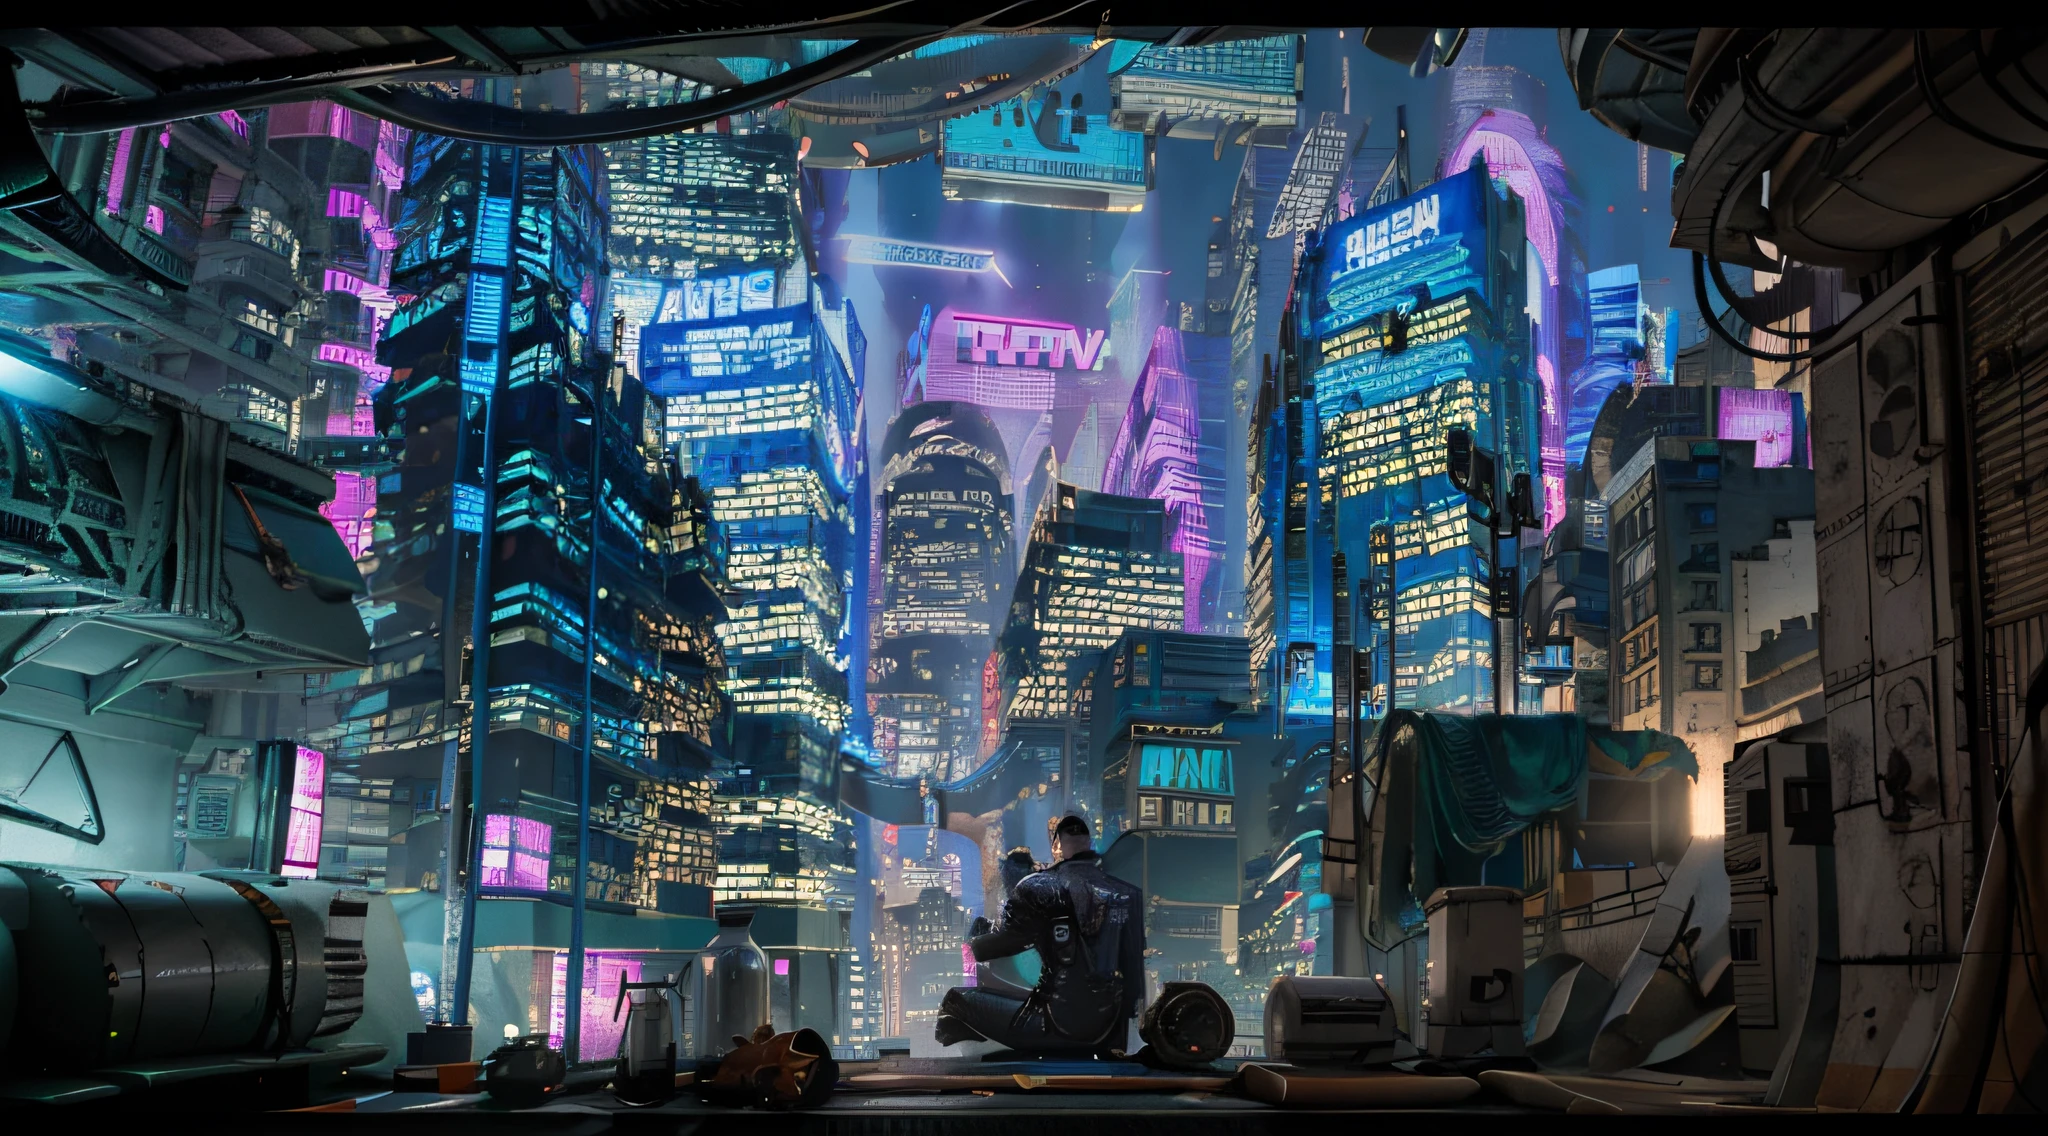 賽博龐克城市，屋頂上有一名男性，穿著透明夾克，霓虹燈下抽煙，俯瞰城市, 4k